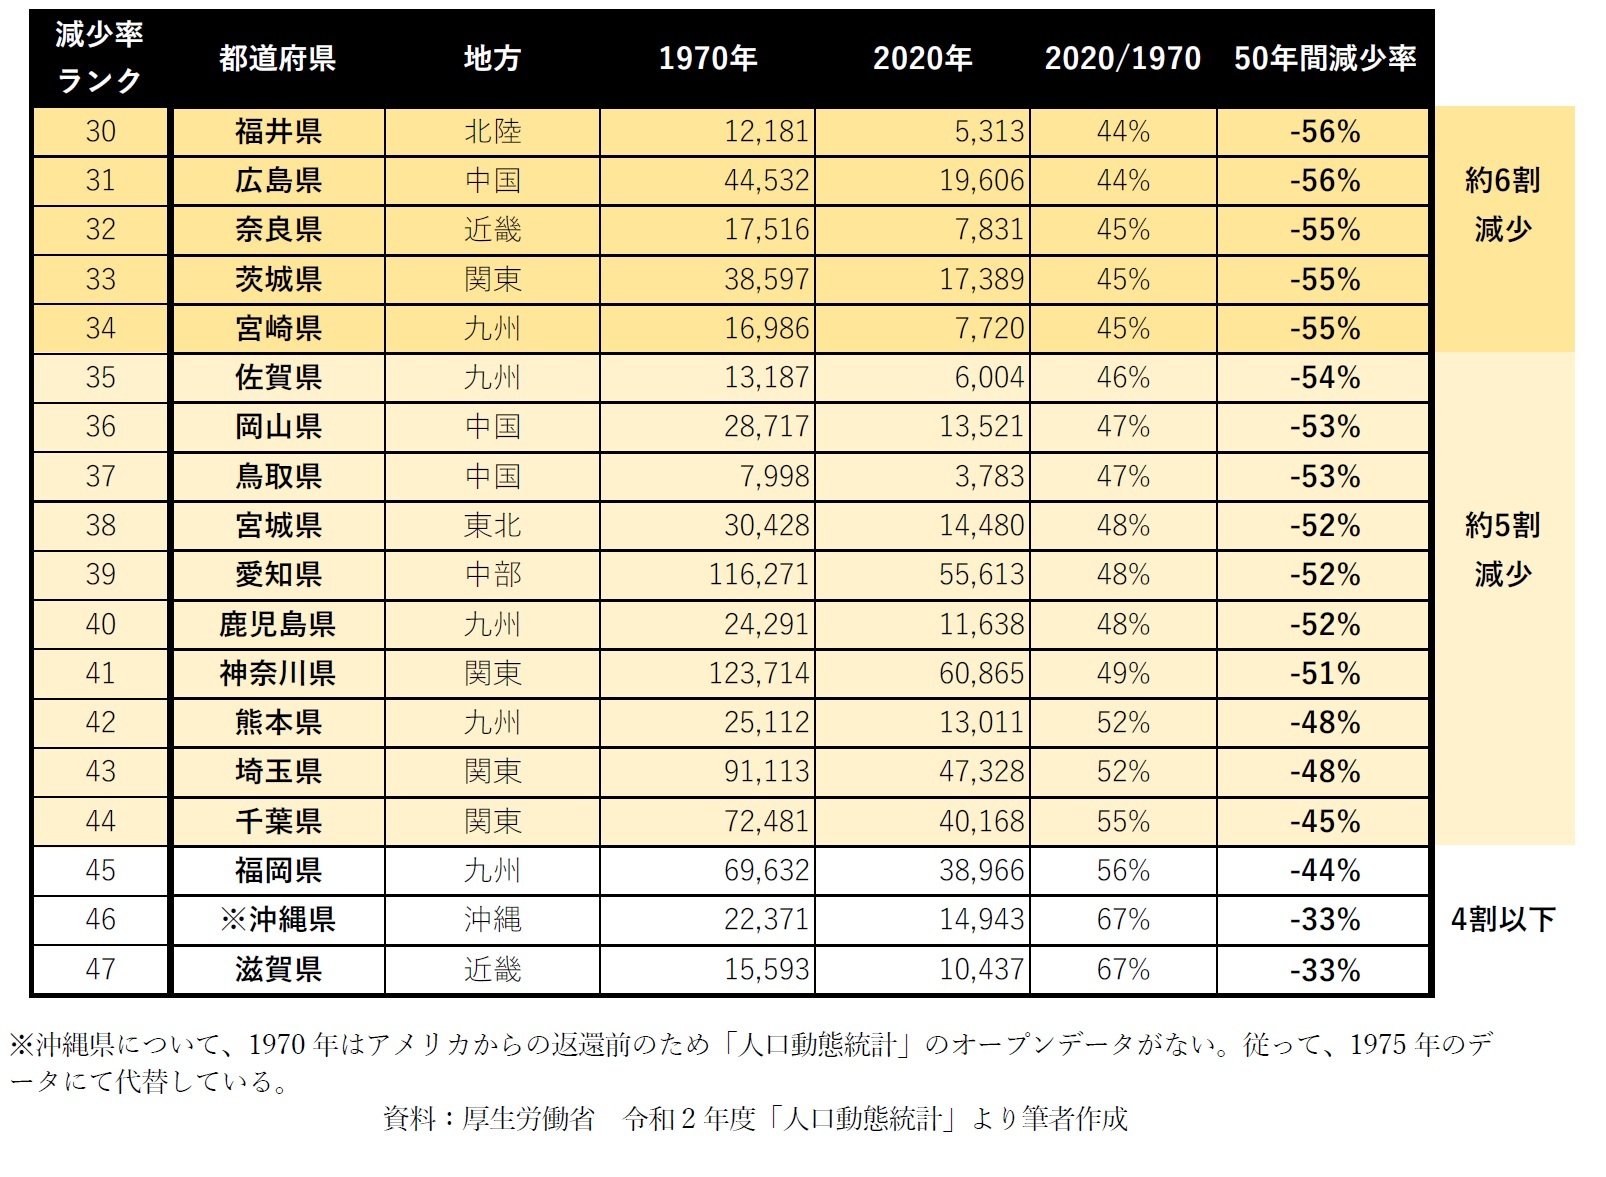 【図表1-2】1970年から2020年における都道府県別出生数減少率ランキング